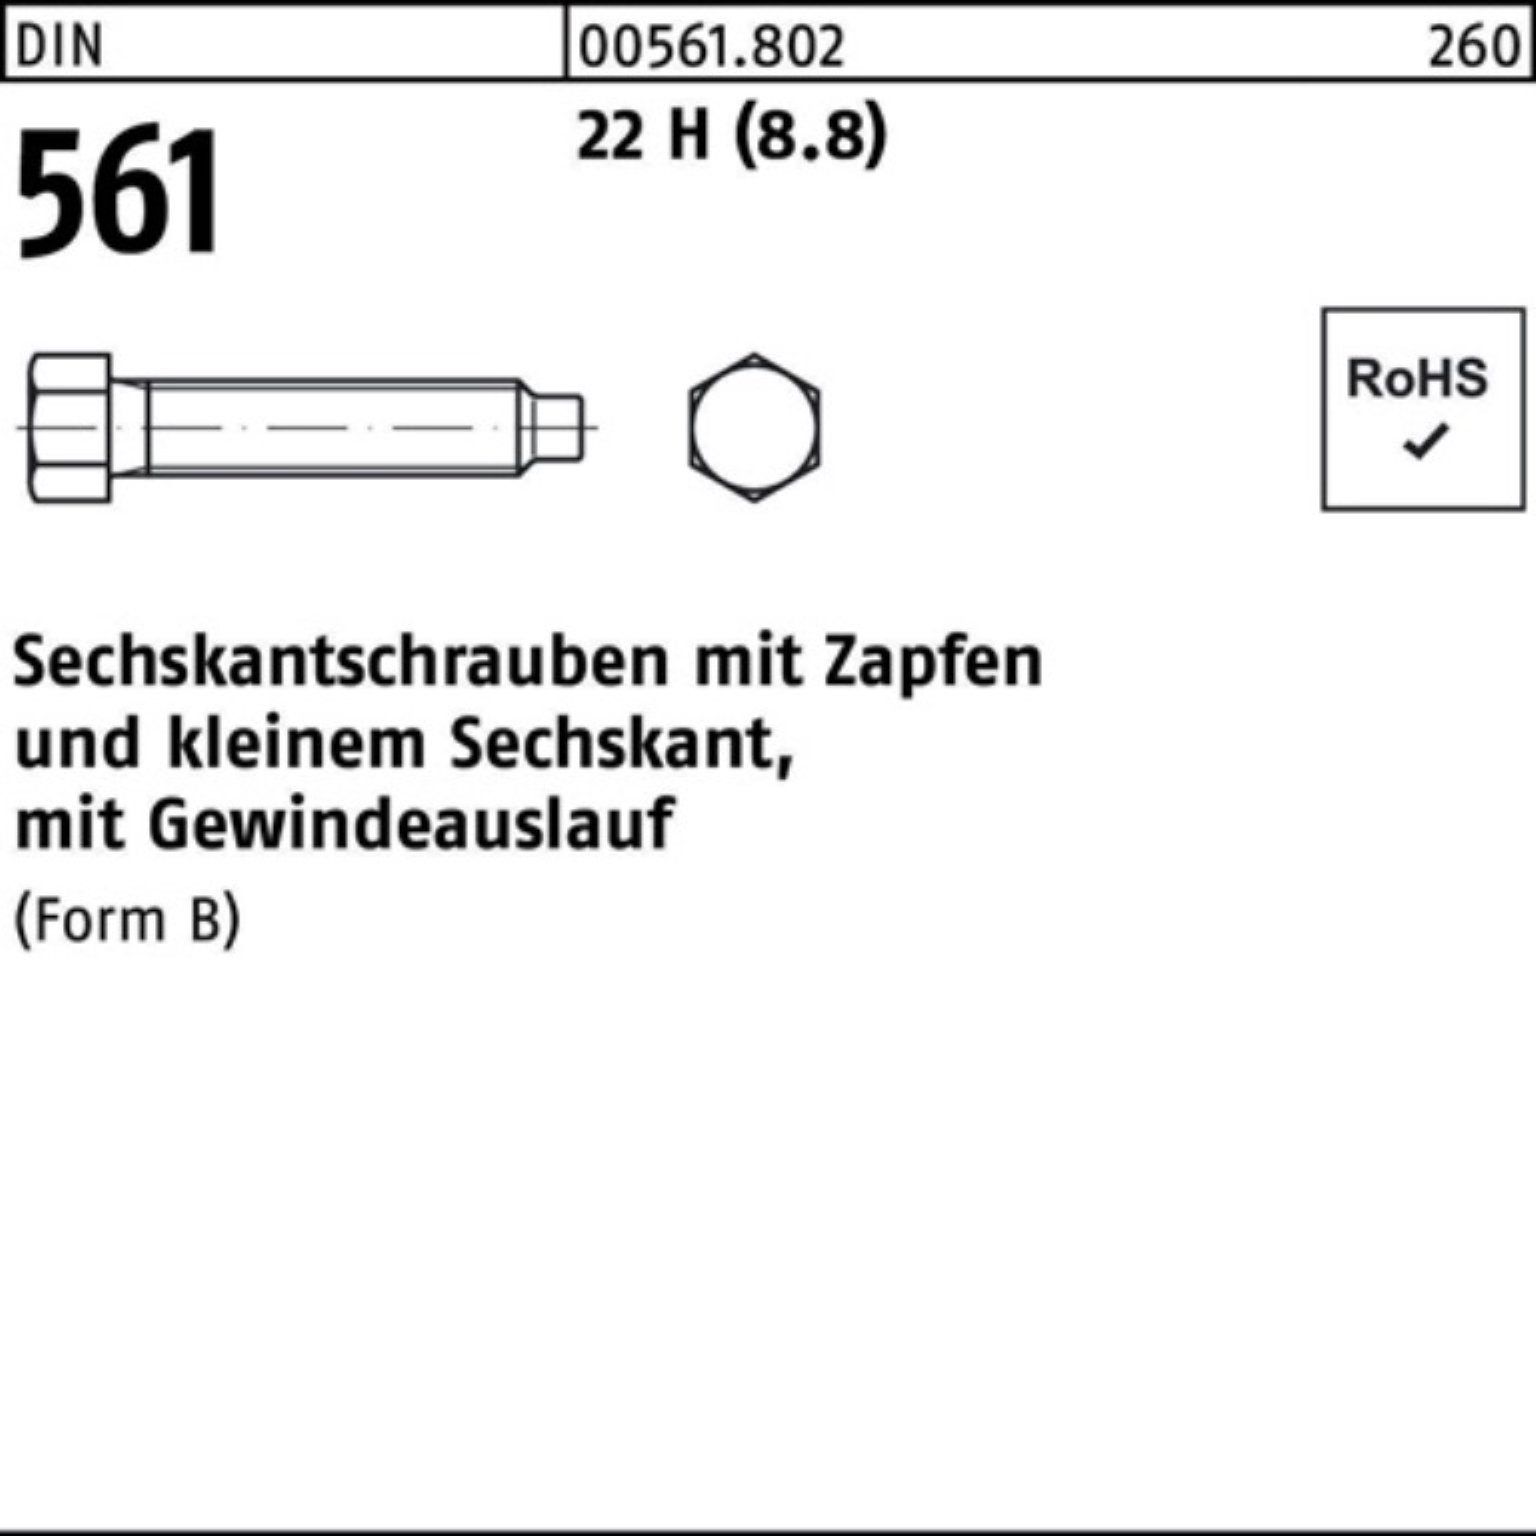 H BM (8.8) Sechskantschraube 50 Sechskantschraube Pack Reyher 100er 10x St 22 Zapfen DIN 70 561